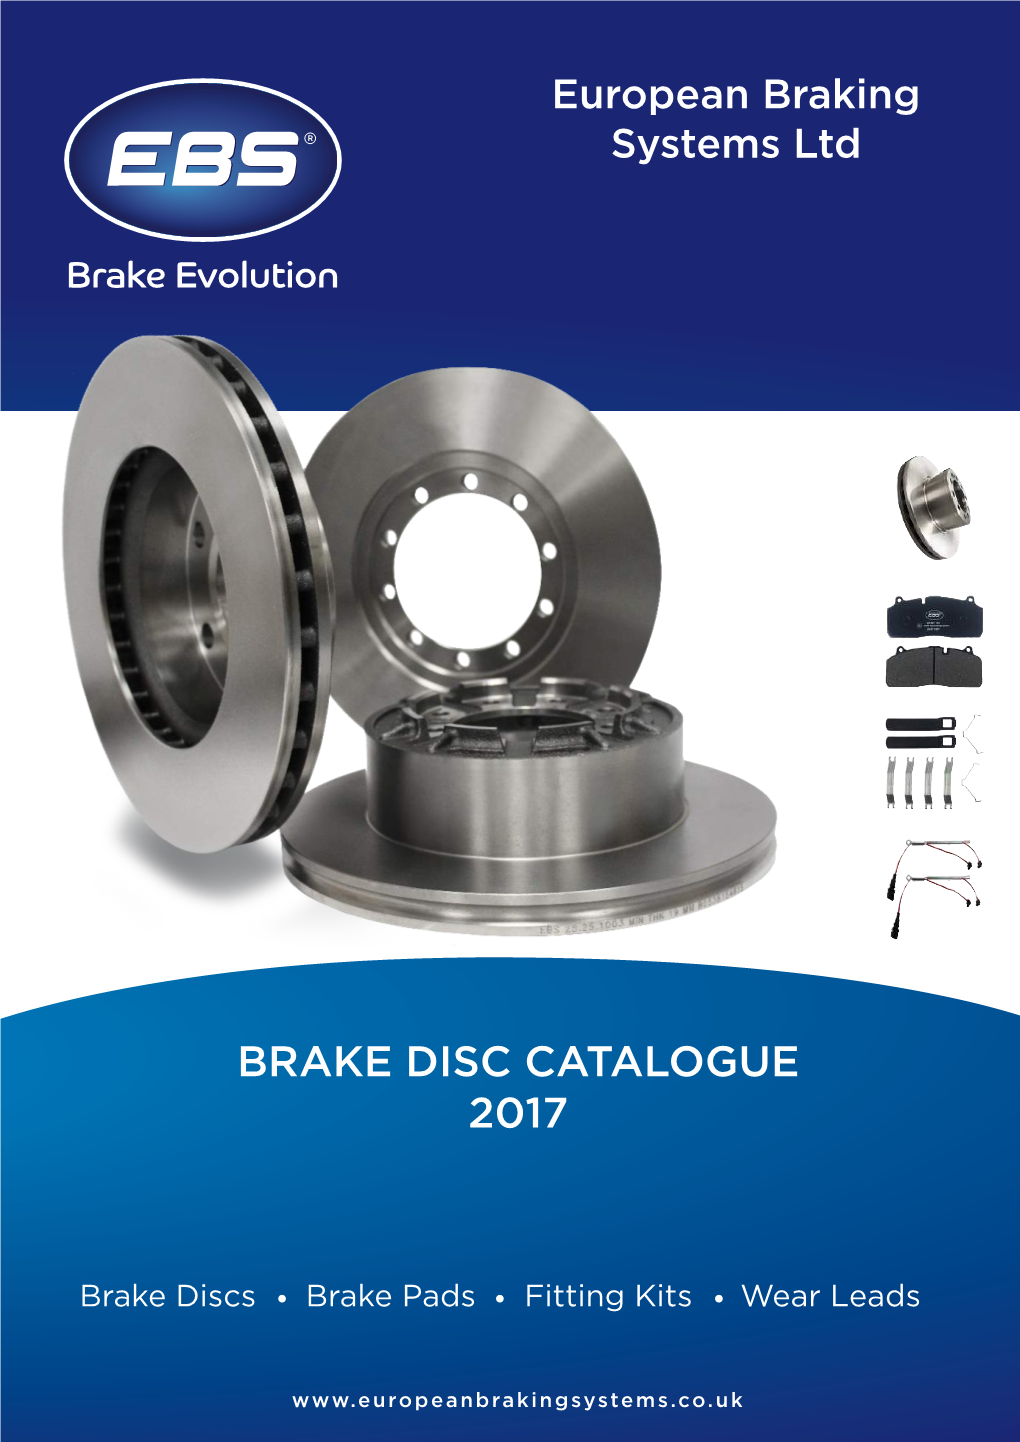 Brake Disc Catalogue 2017